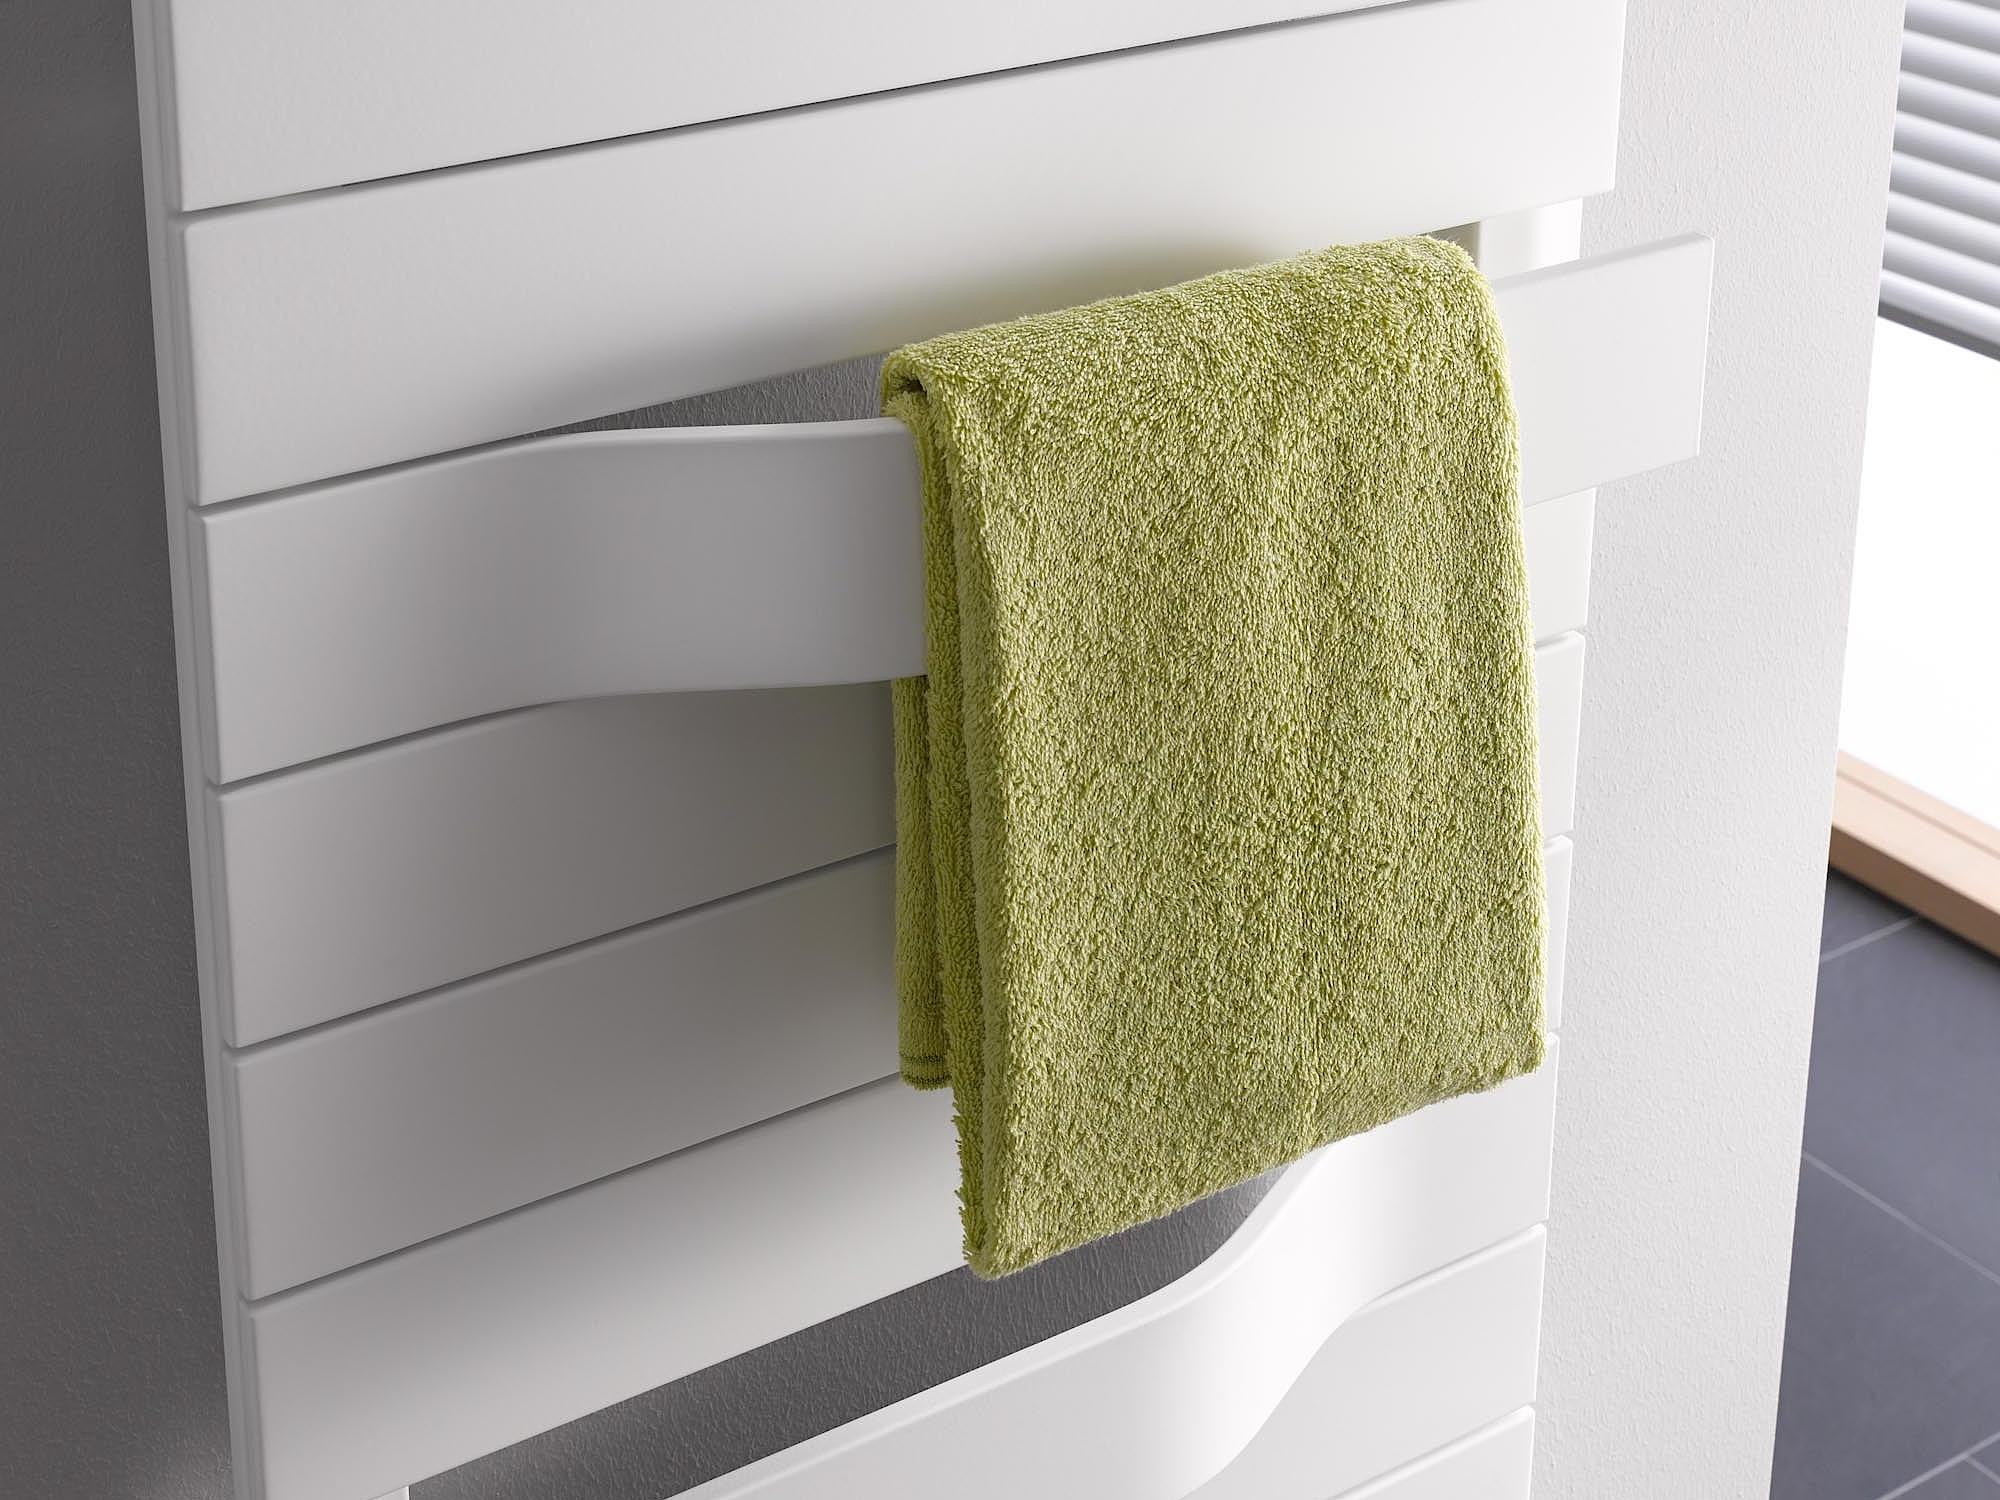 Designové a koupelnové otopné těleso Kermi Tabeo s madly na ručníky, které dynamicky vystupují z povrchu.